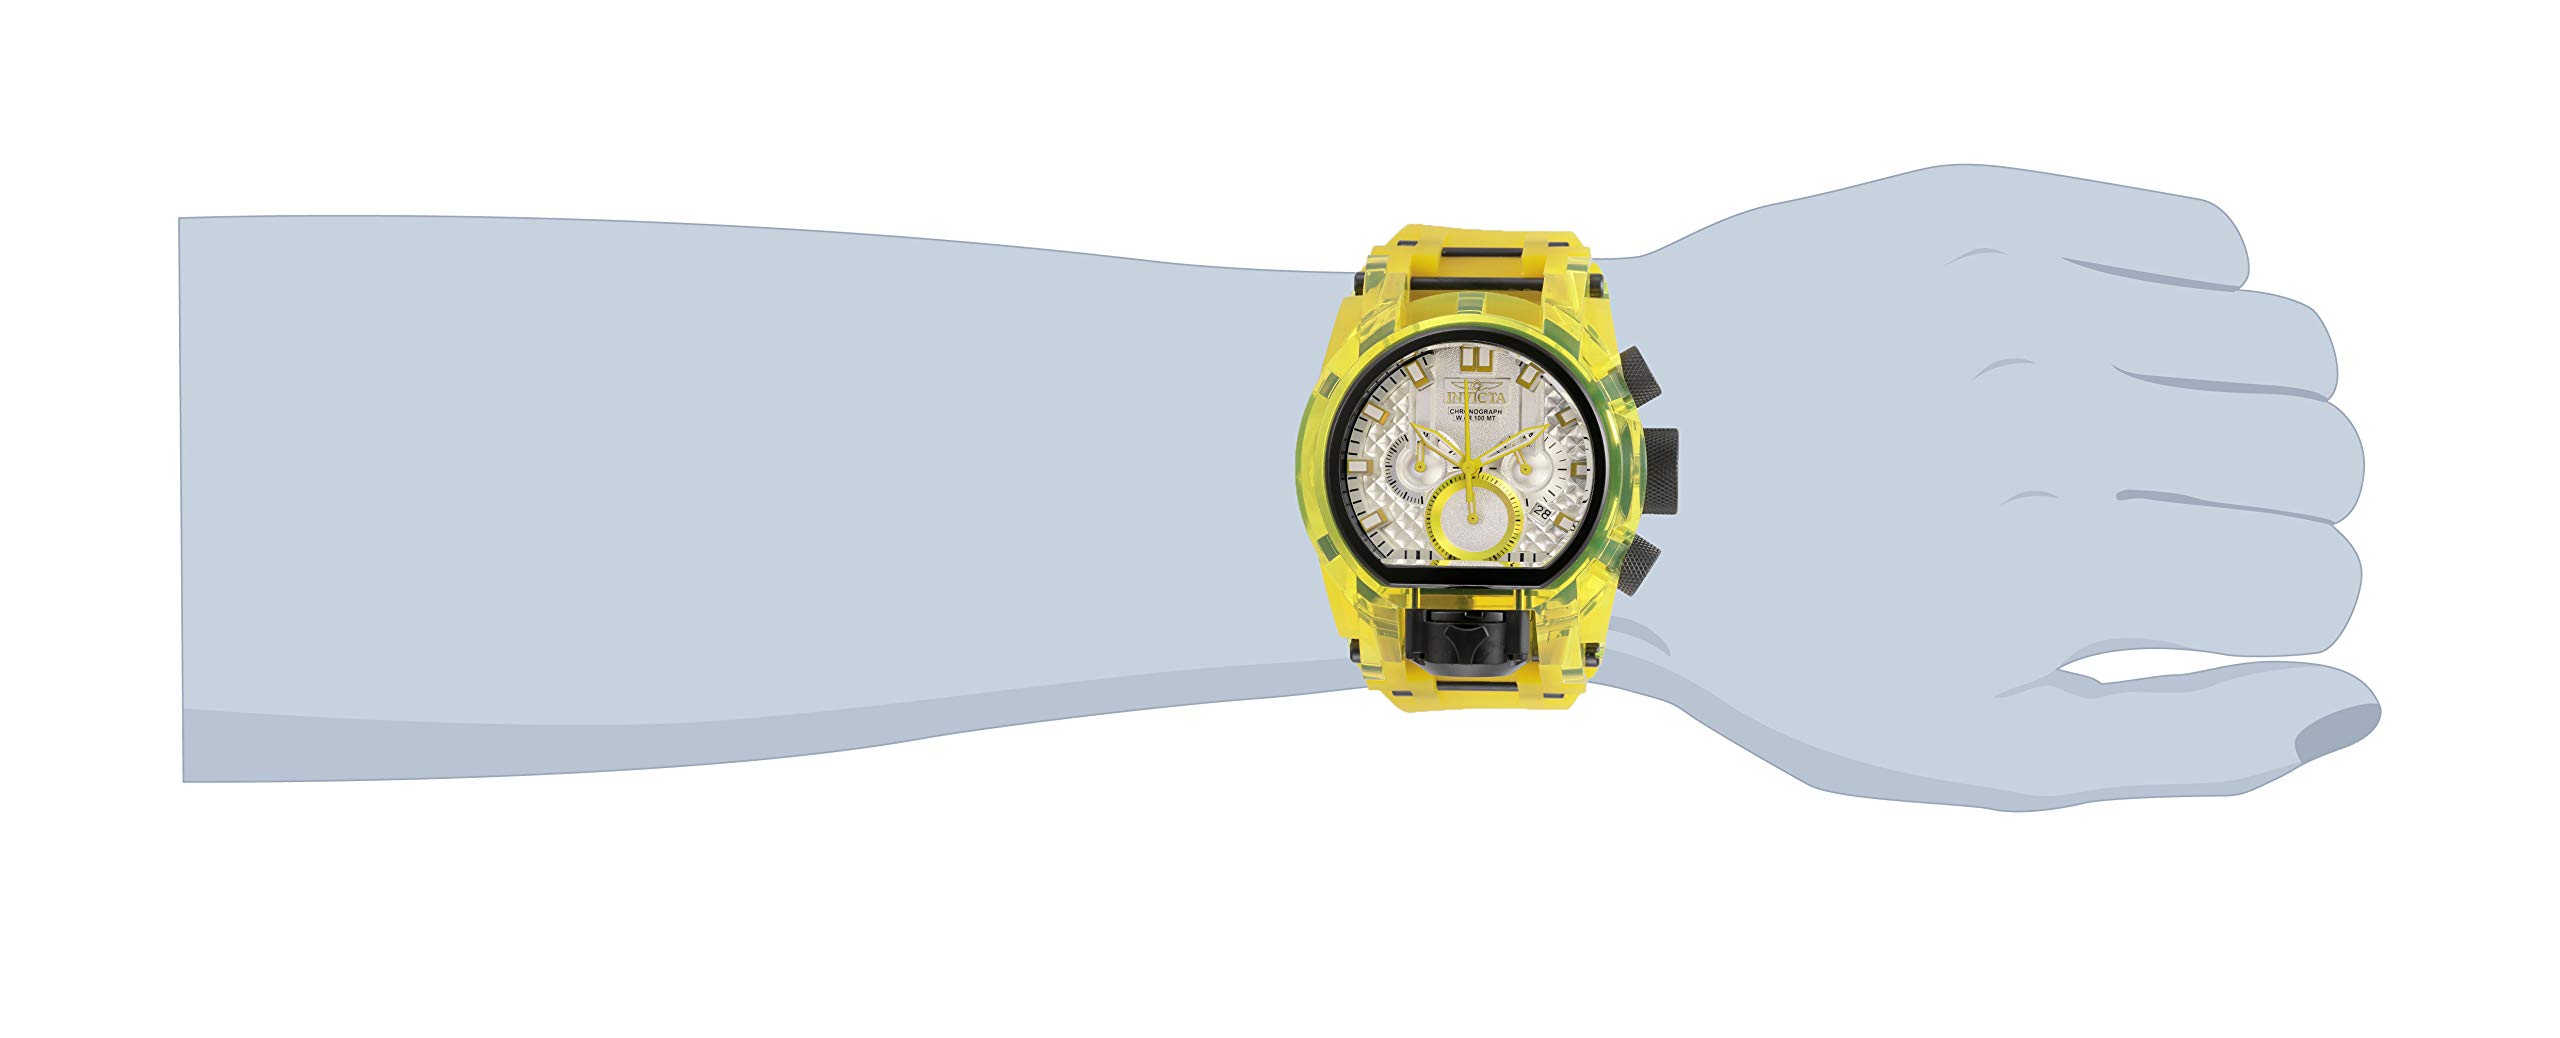 Invicta Men's Bolt Quartz Watch, Yellow, 29997